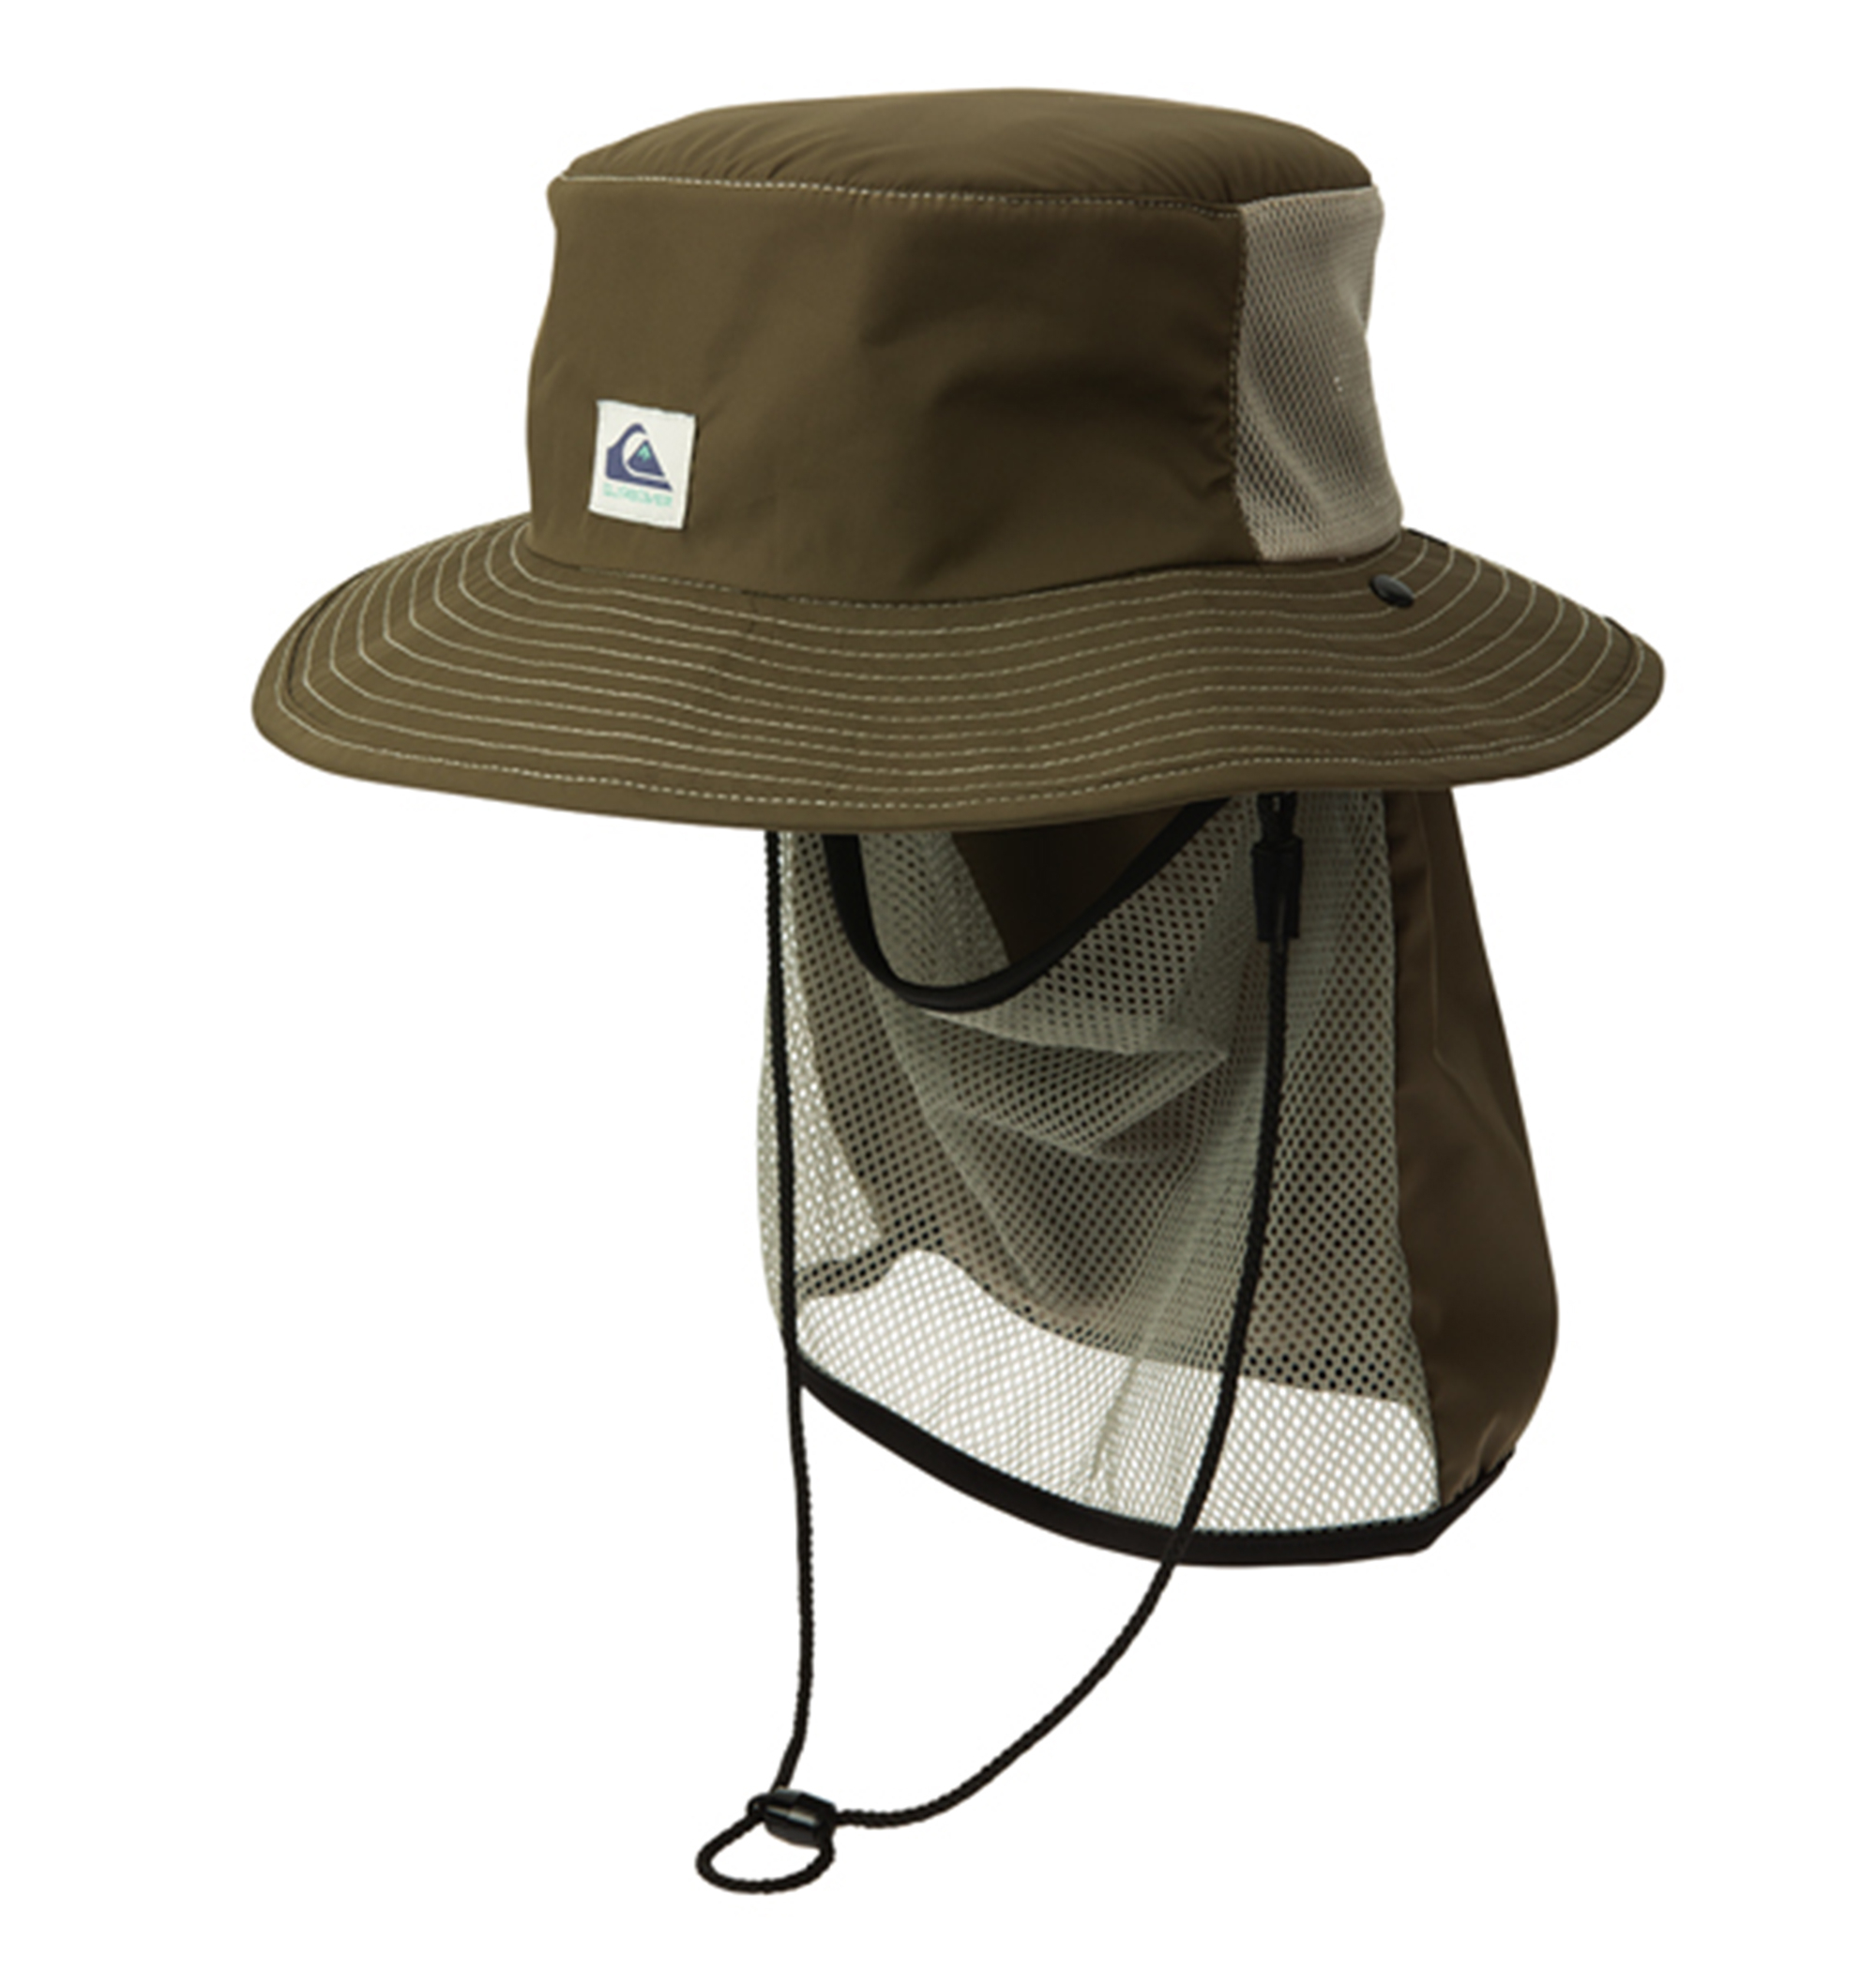  UV SUP CAMP HAT ポリエステル100% UV CUT (UPF50+) 撥水加工素材の日焼け防止SUPキャンプハット 